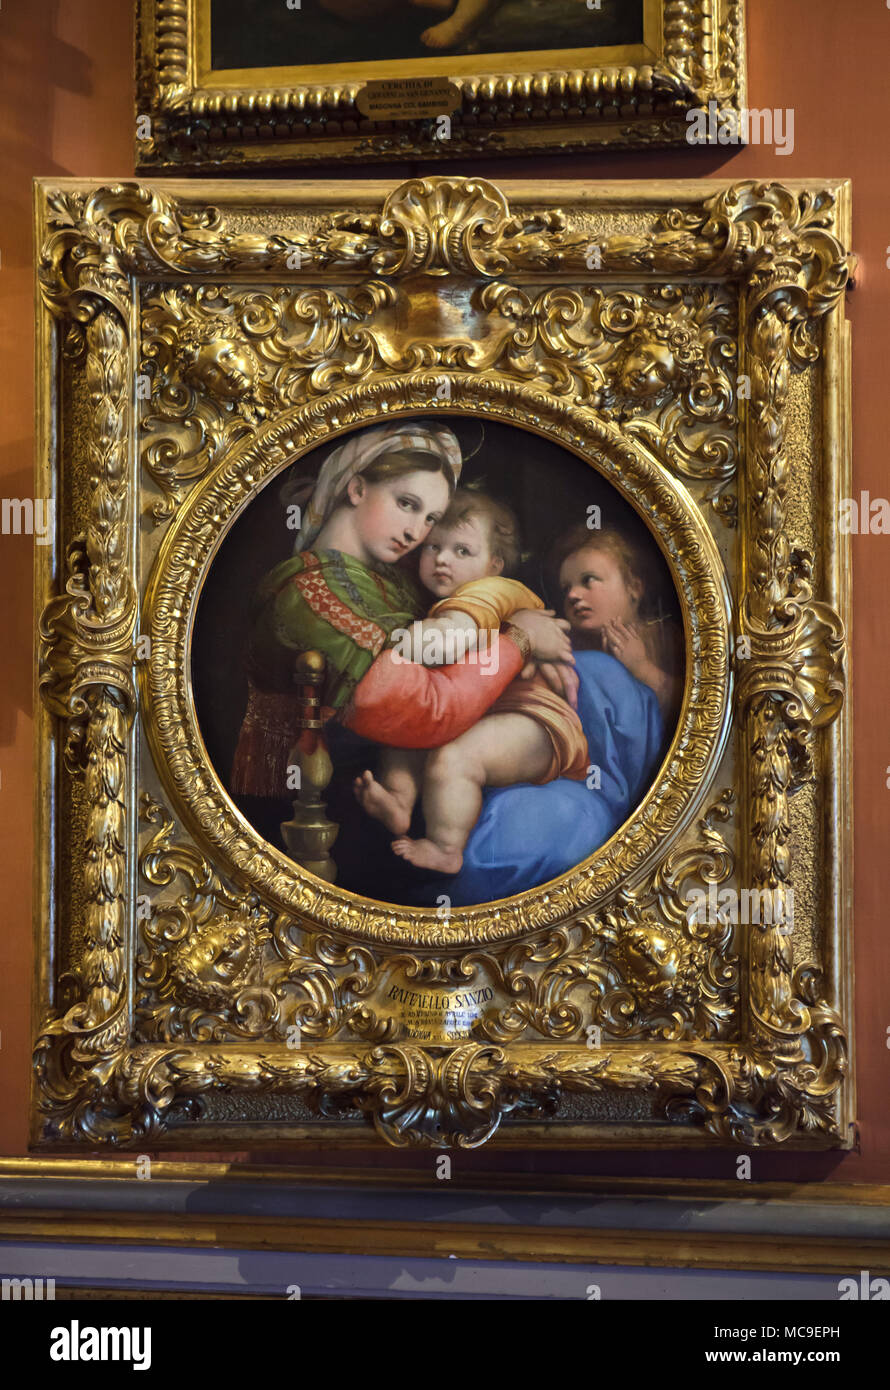 Gemälde "Madonna della seggiola" (1513-1514) von der italienischen Renaissance Maler Raphael auf Anzeige in der Galerie Palatina (Galleria Palatina) im Palazzo Pitti in Florenz, Toskana, Italien. Stockfoto